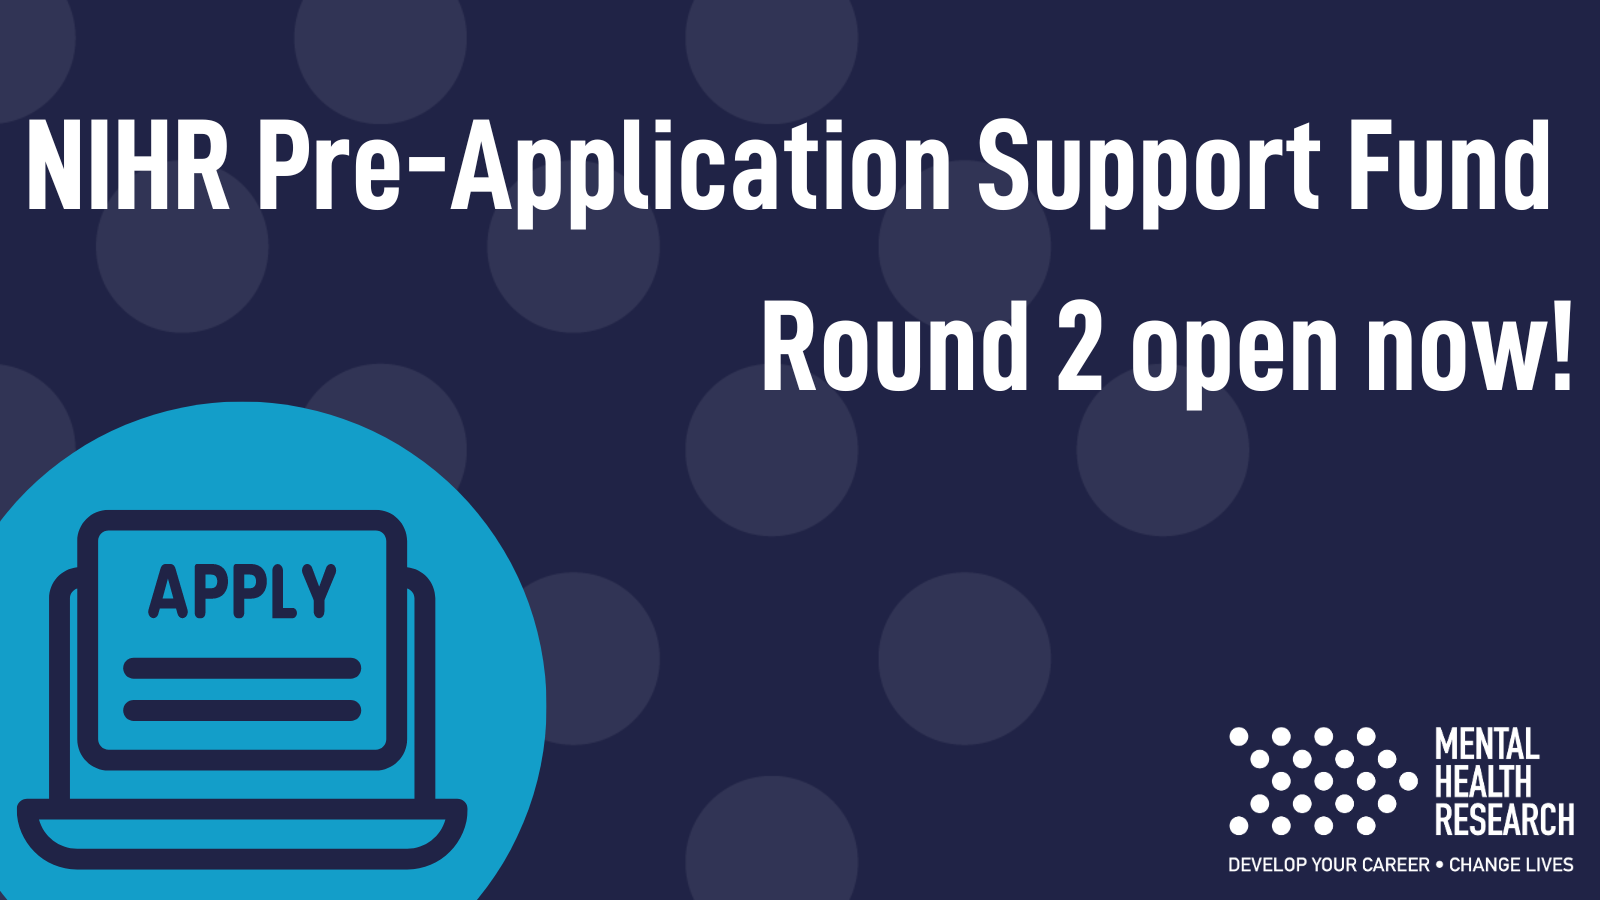 NIHR Pre-Application Support Fund Round 2